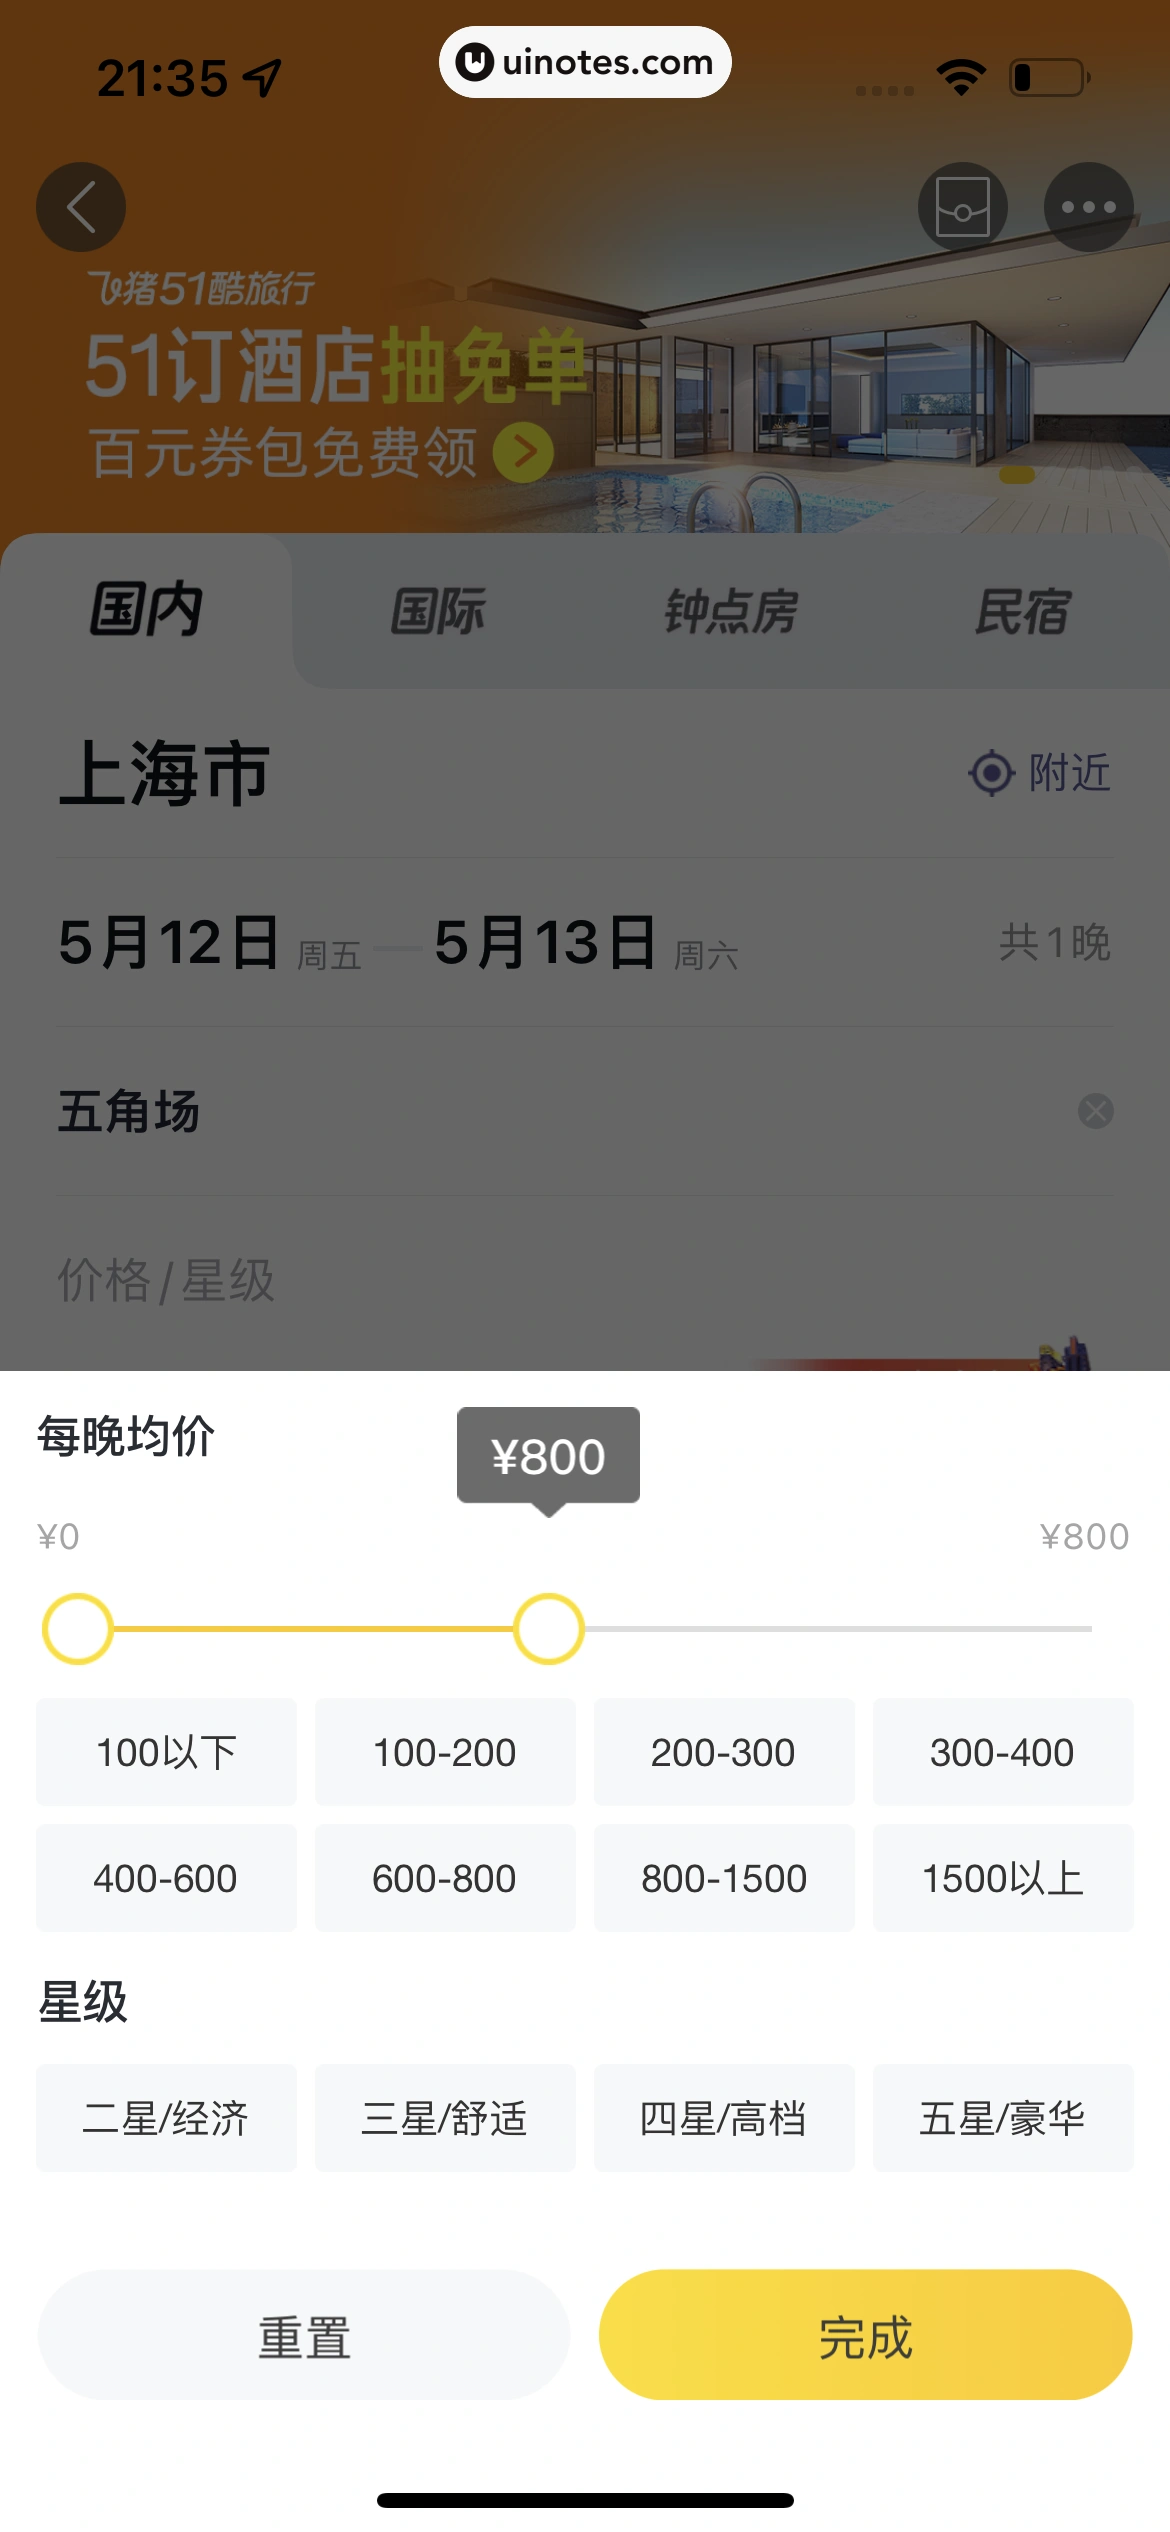 飞猪旅行 App 截图 168 - UI Notes